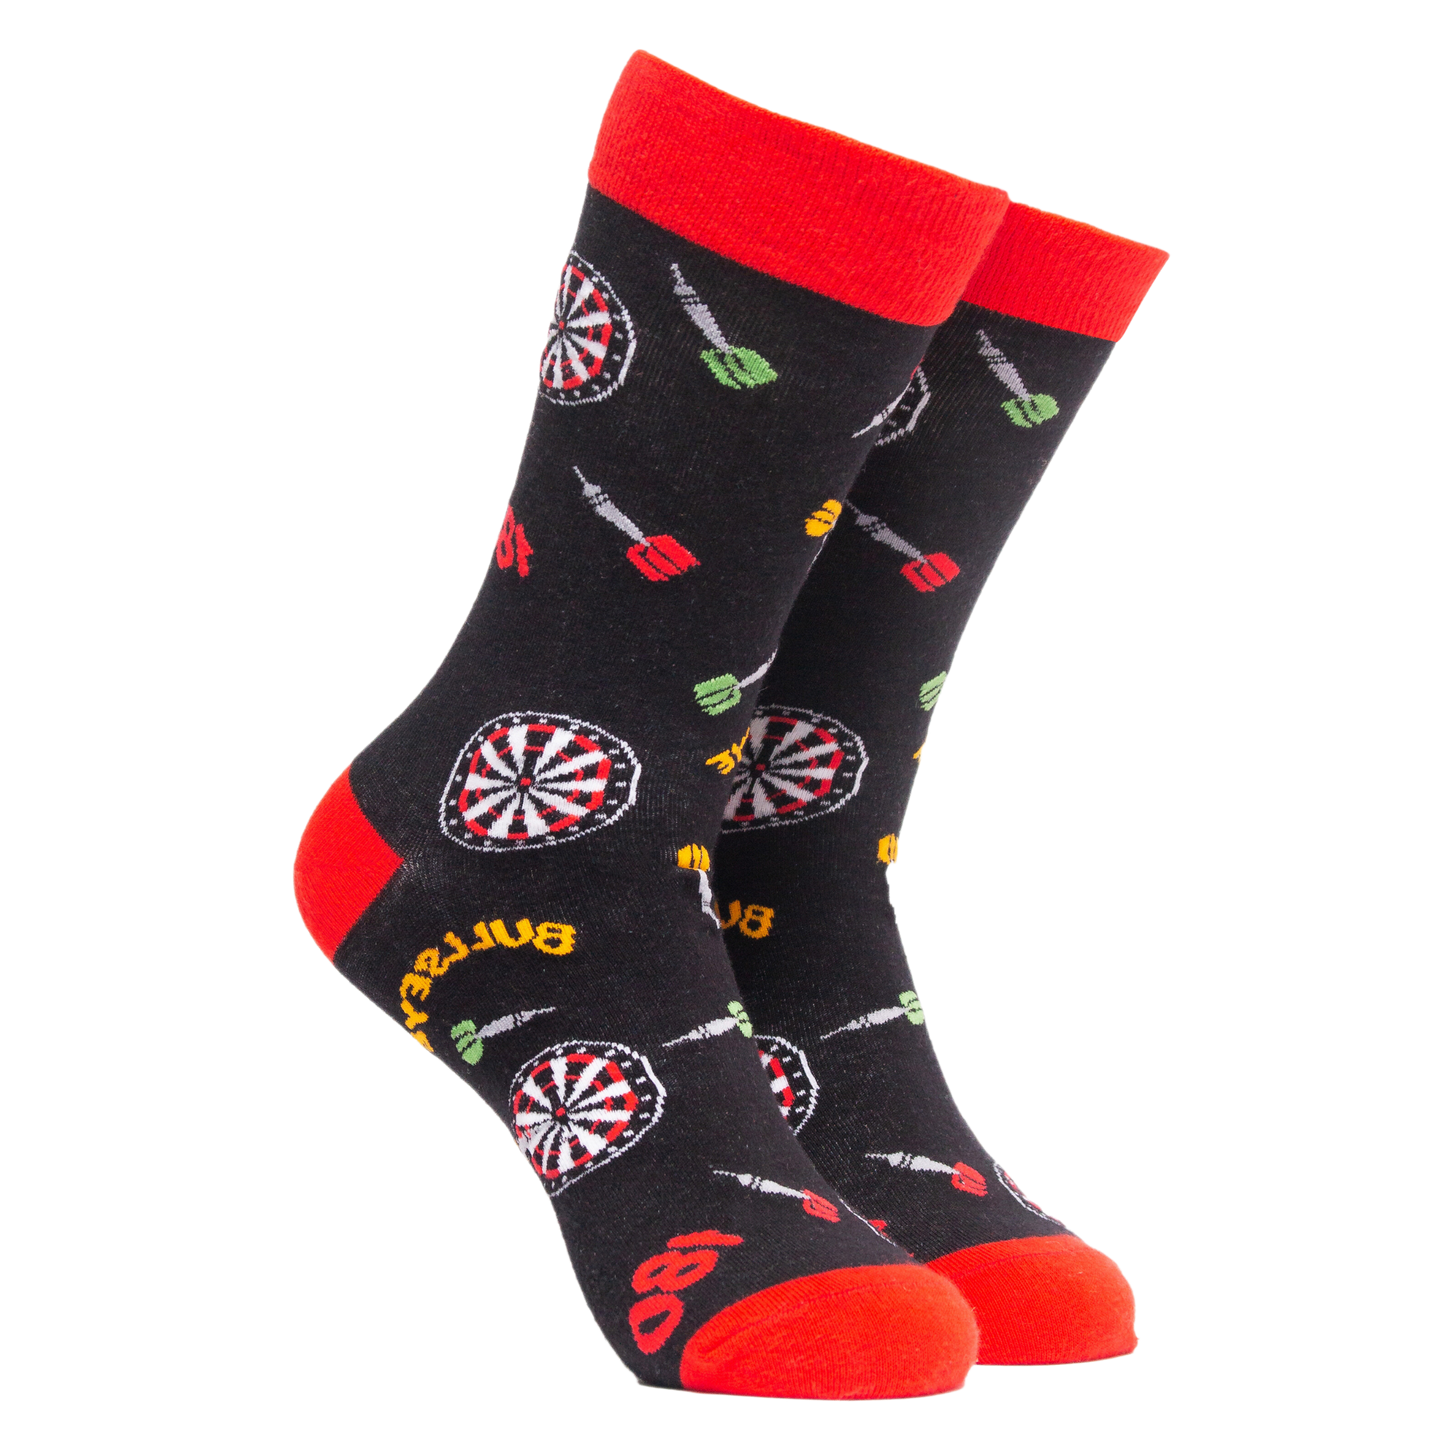 Bullseye Socks